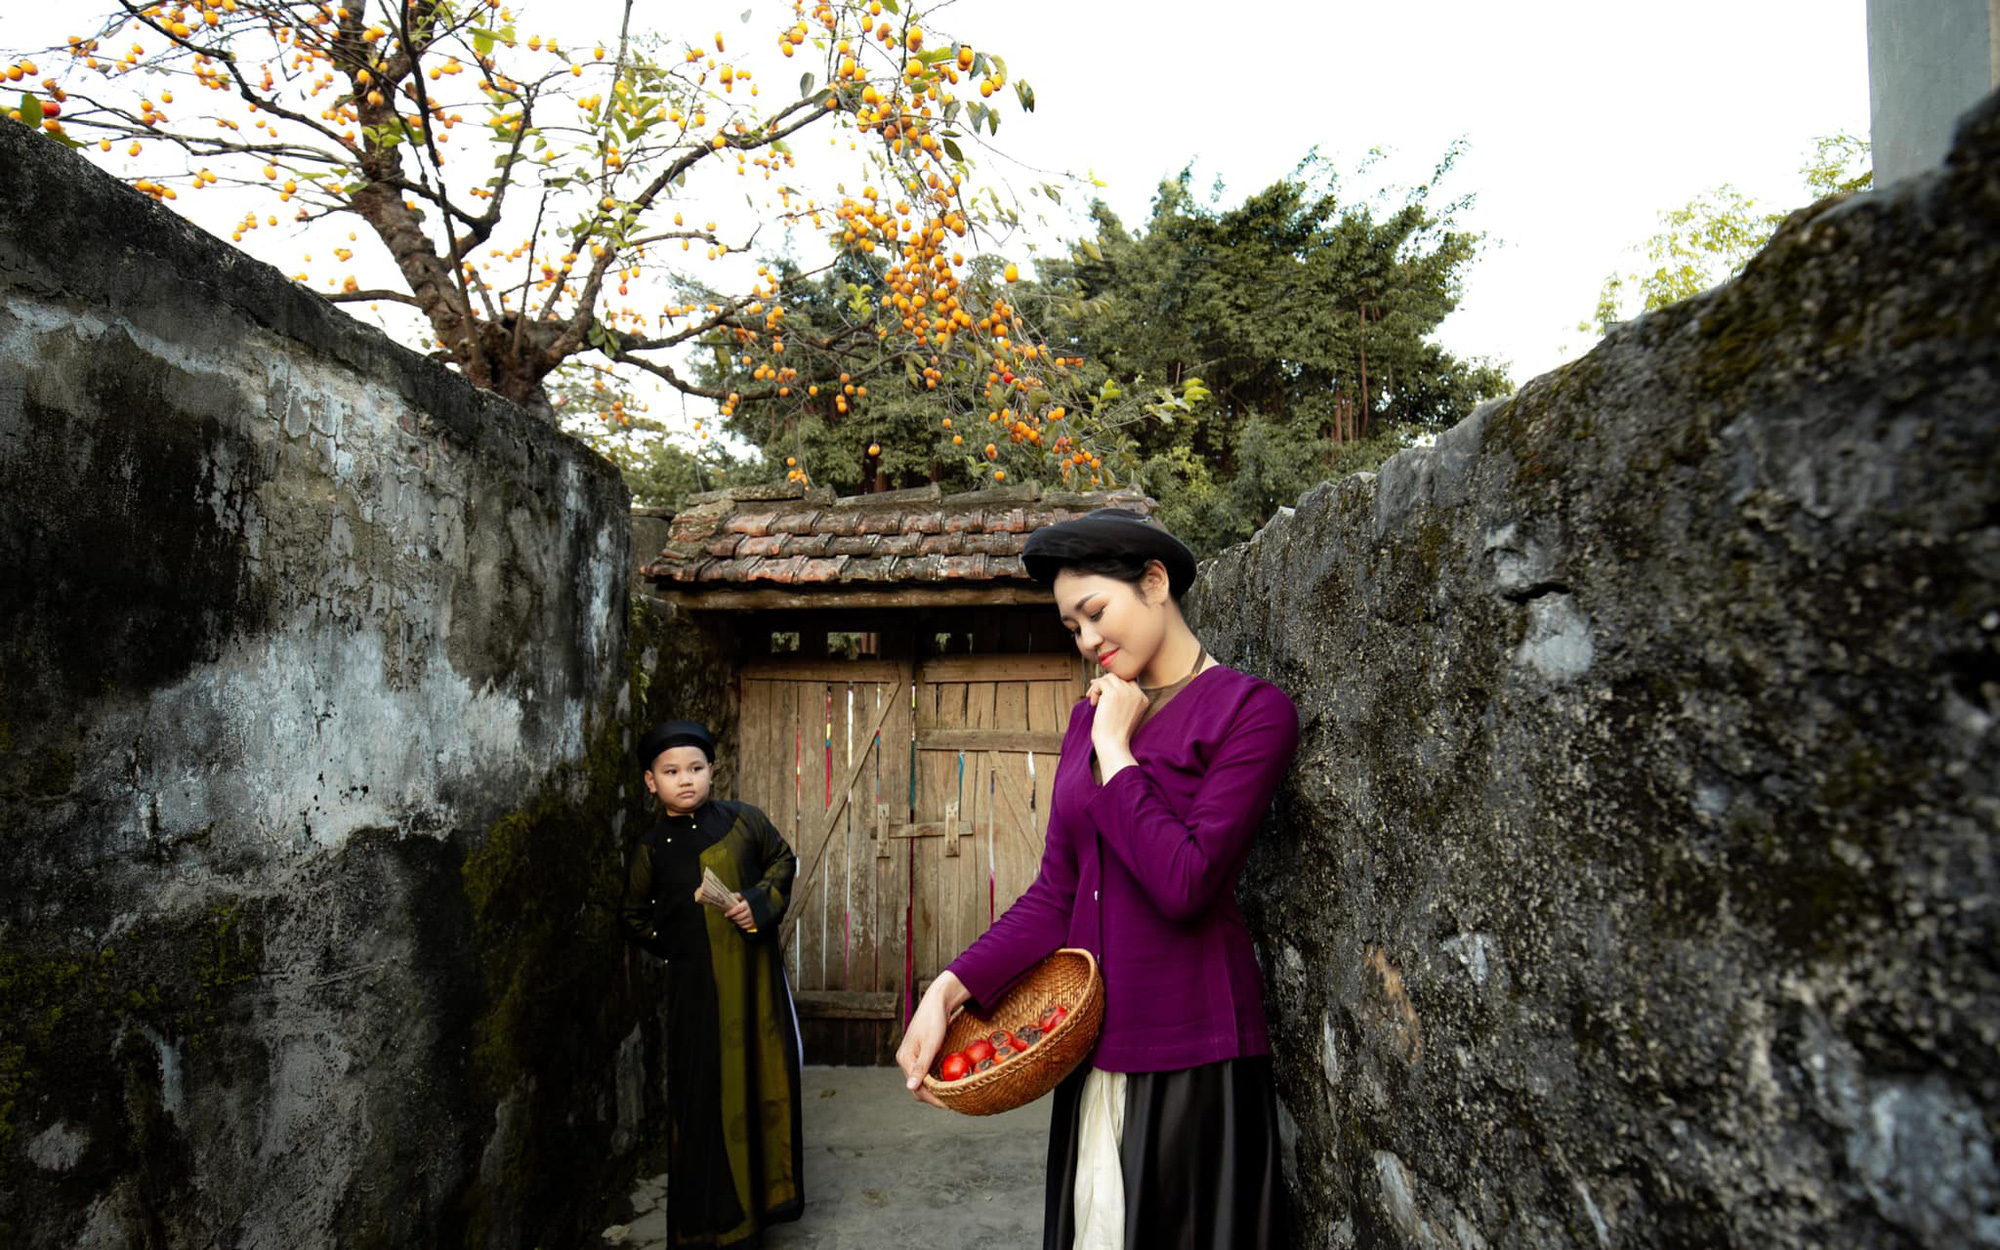 Bộ ảnh đẹp nhất từ trước đến nay bên cây hồng trăm tuổi ở Ninh Bình, xem xong nitizen khuyên đừng mặc hanbok Hàn Quốc nữa